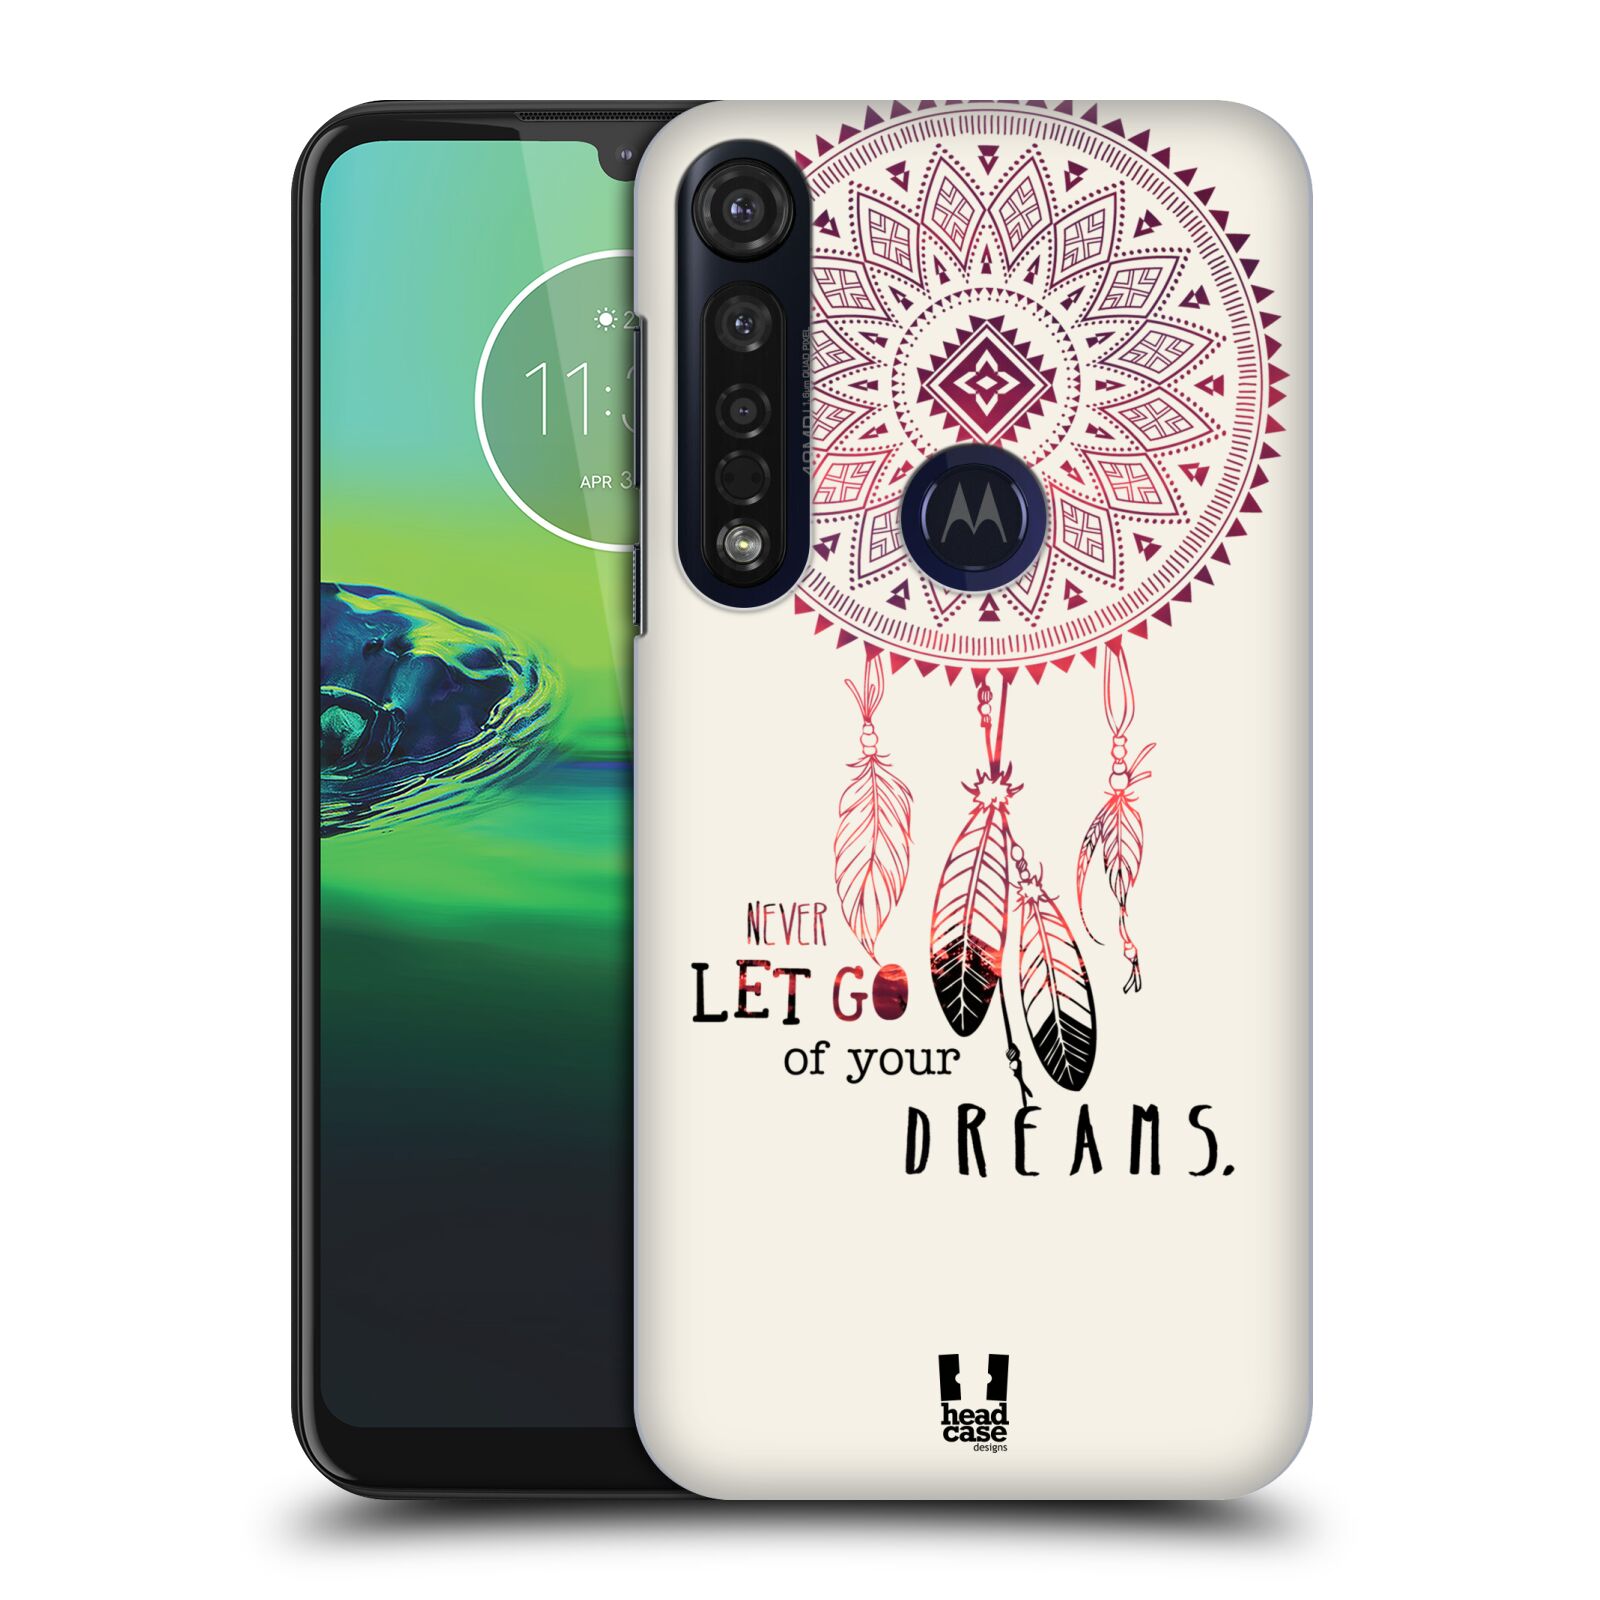 Pouzdro na mobil Motorola Moto G8 PLUS - HEAD CASE - vzor Lapač snů ČERVENÁ